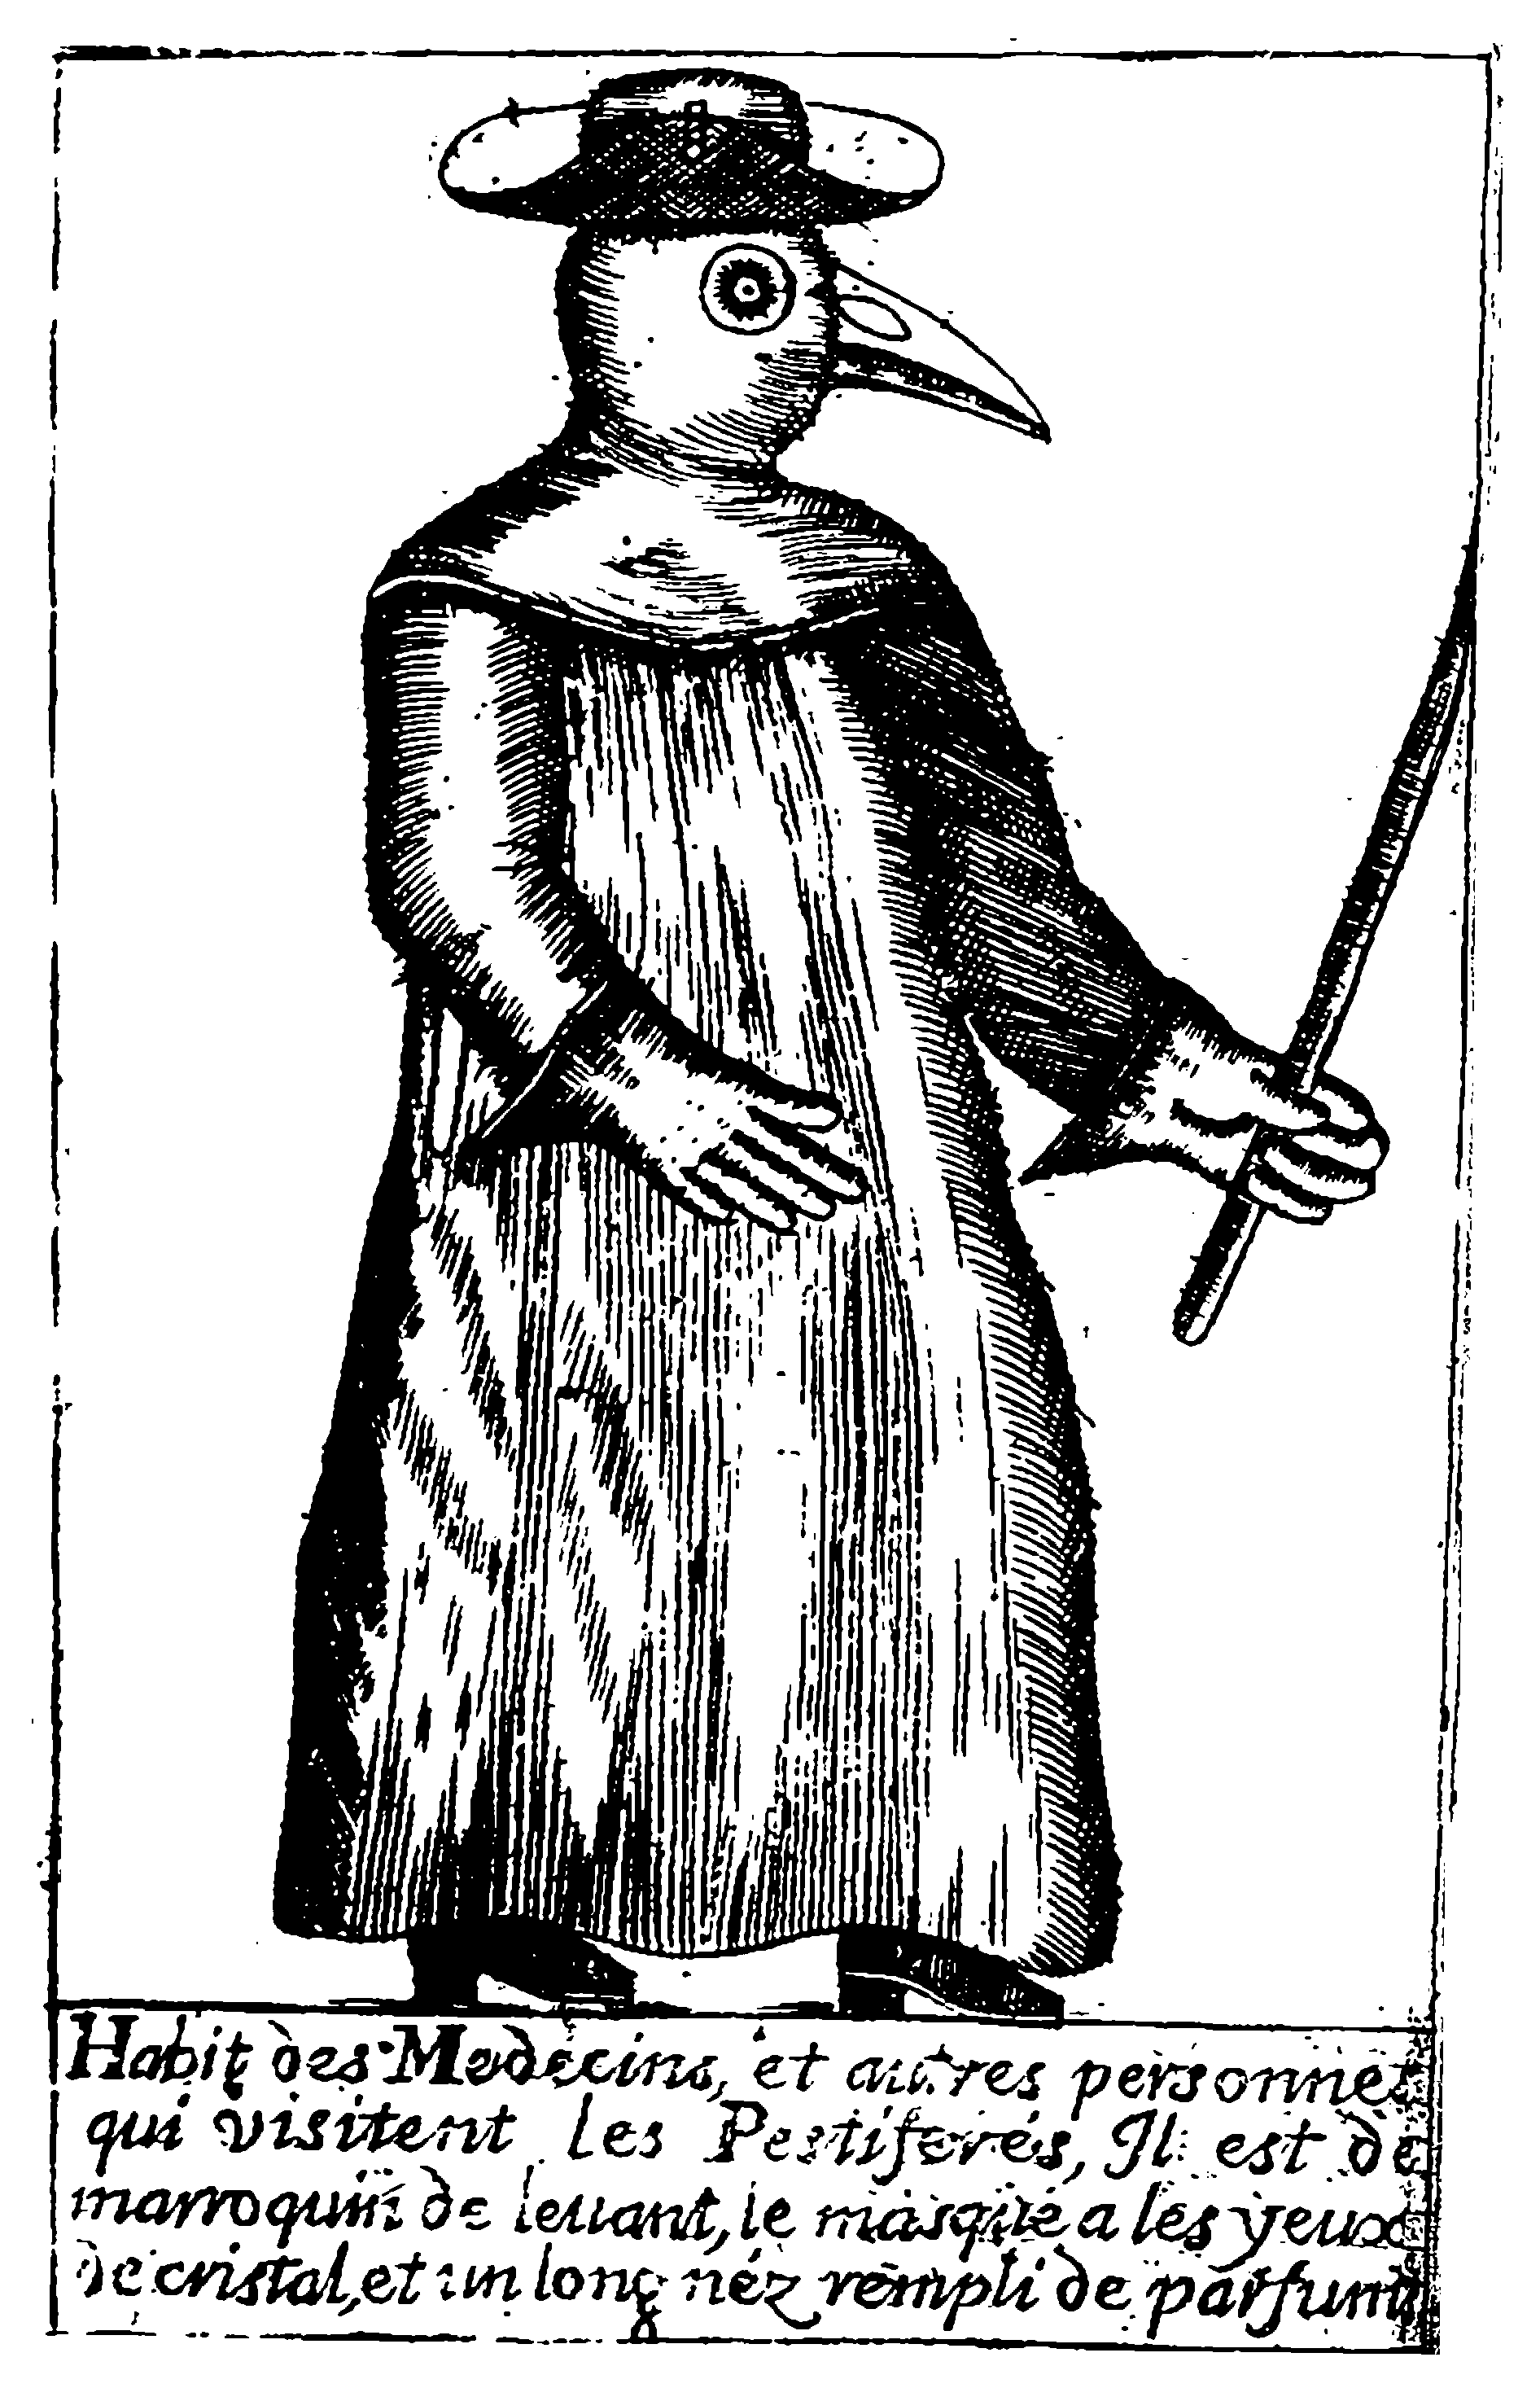 A Plague Doctor – from Jean-Jacques Manget, Traité de la peste (1721)